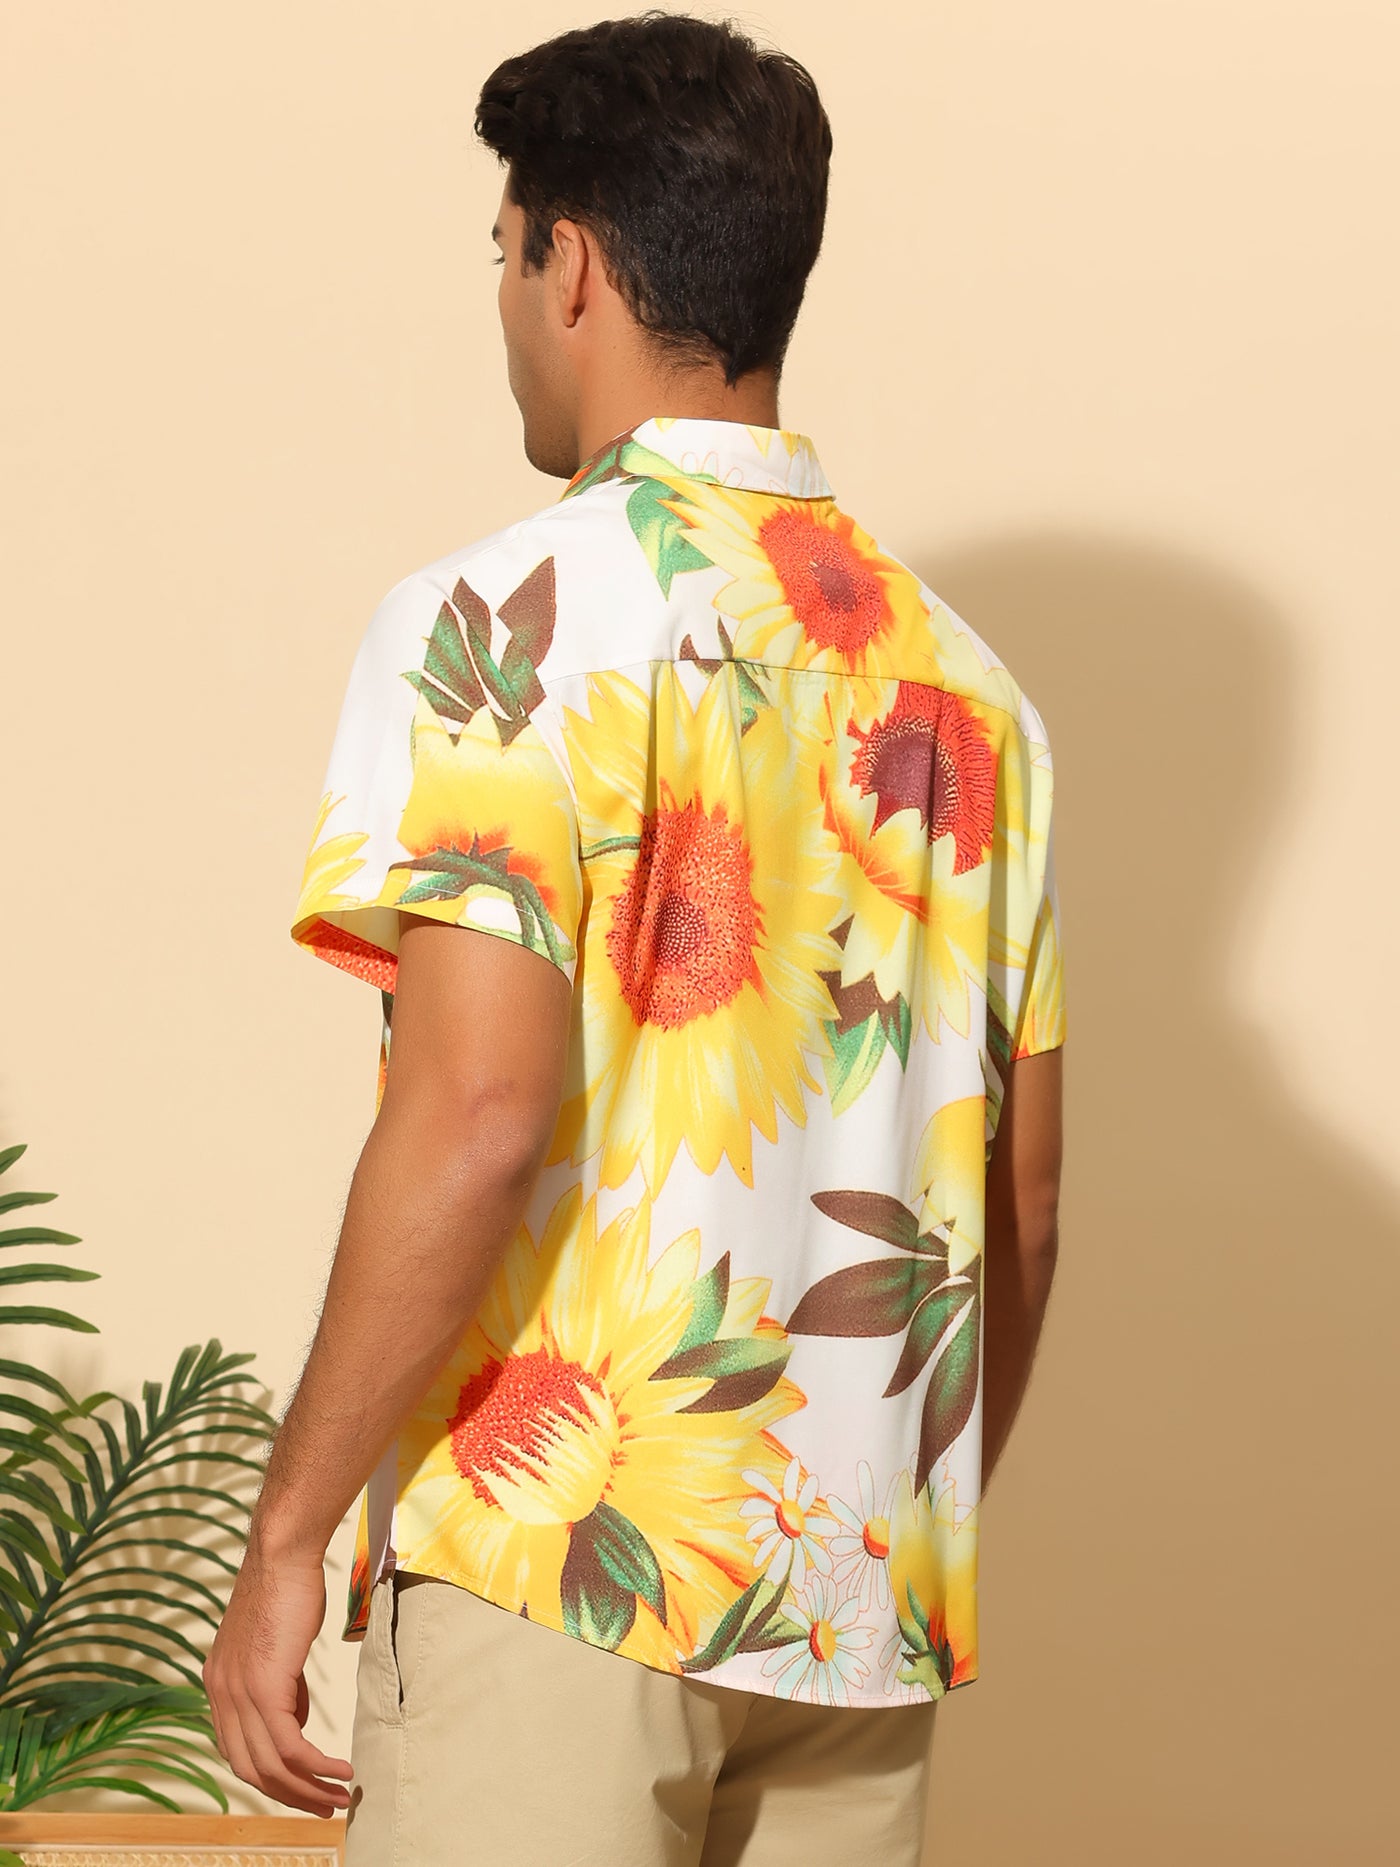 Bublédon Sunflower Short Sleeves Summer Hawaiian Floral Shirts